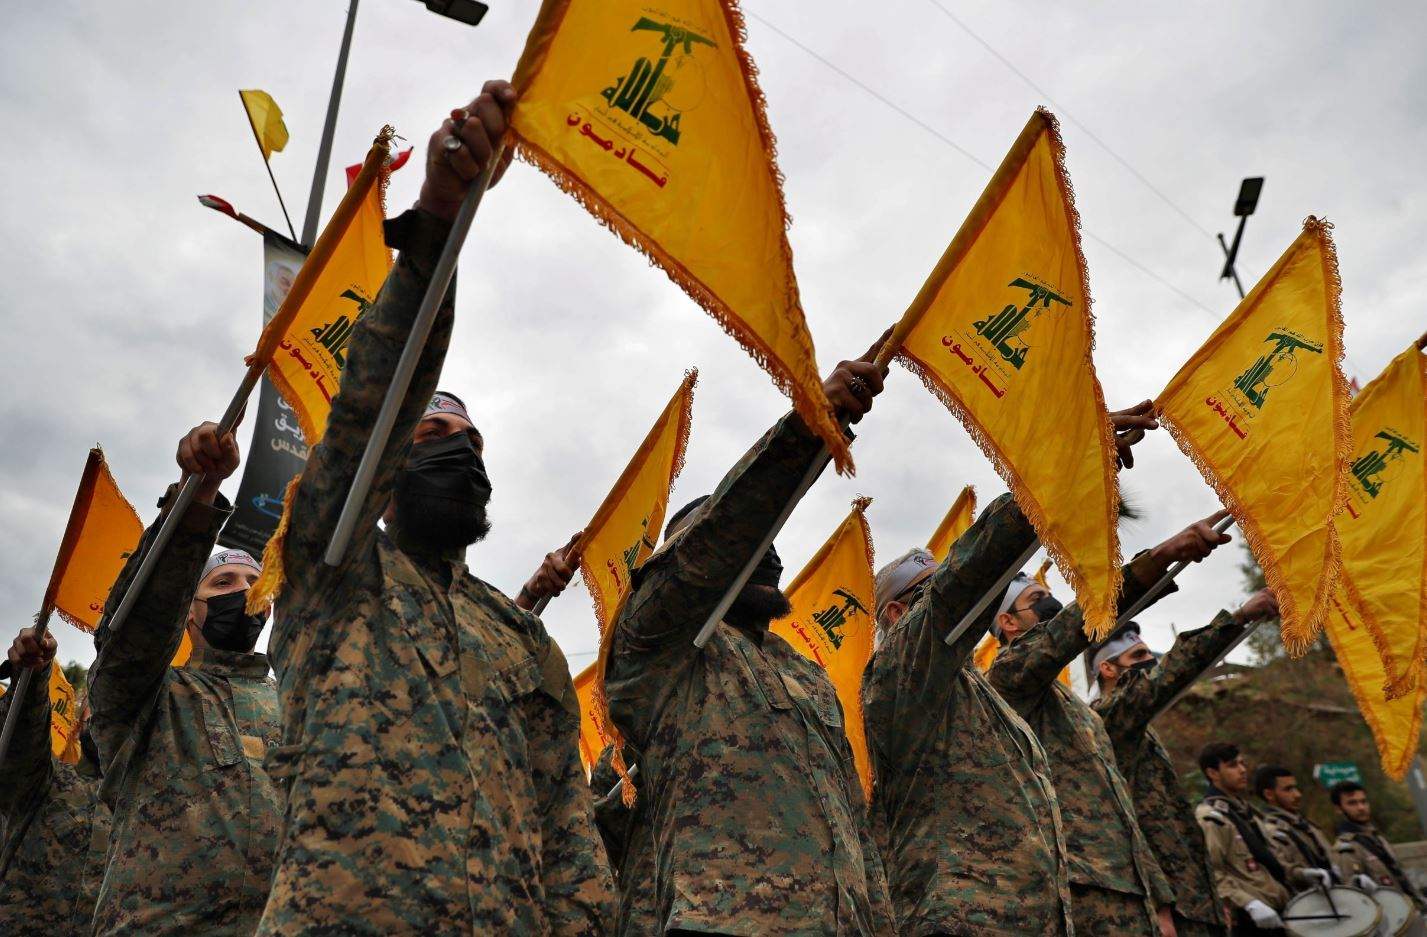 حزب الله: إستهدفنا قوة لوجستية تابعة لجيش الإحتلال قرب ثكنة دوفيف وأوقعنا فيها إصابات مؤكدة بين قتيلٍ وجريح 